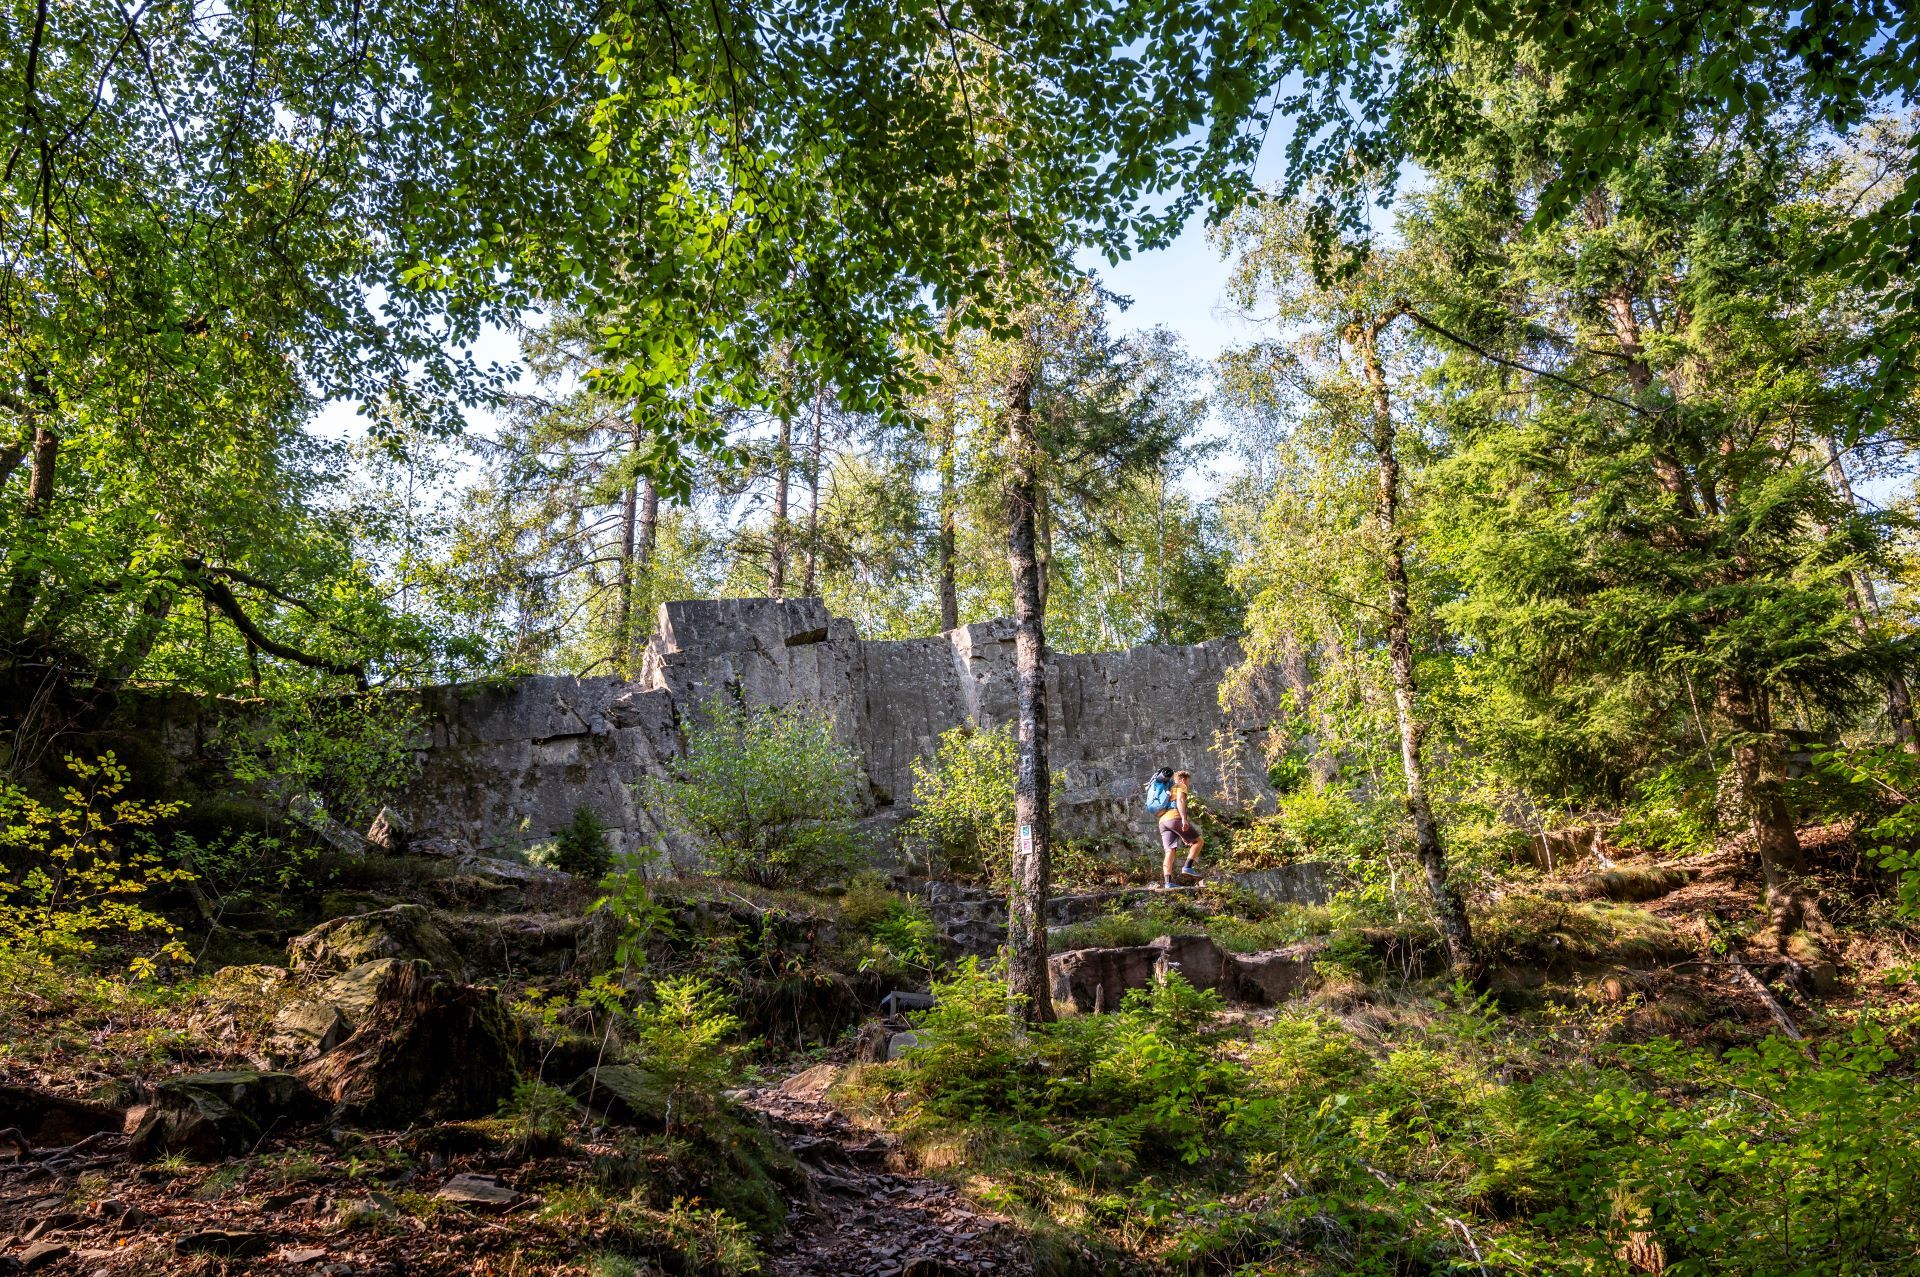 Des ruines anciennes sont représentées au milieu de la forêt, devant lesquelles marche un homme portant une chemise jaune et un sac à dos bleu.